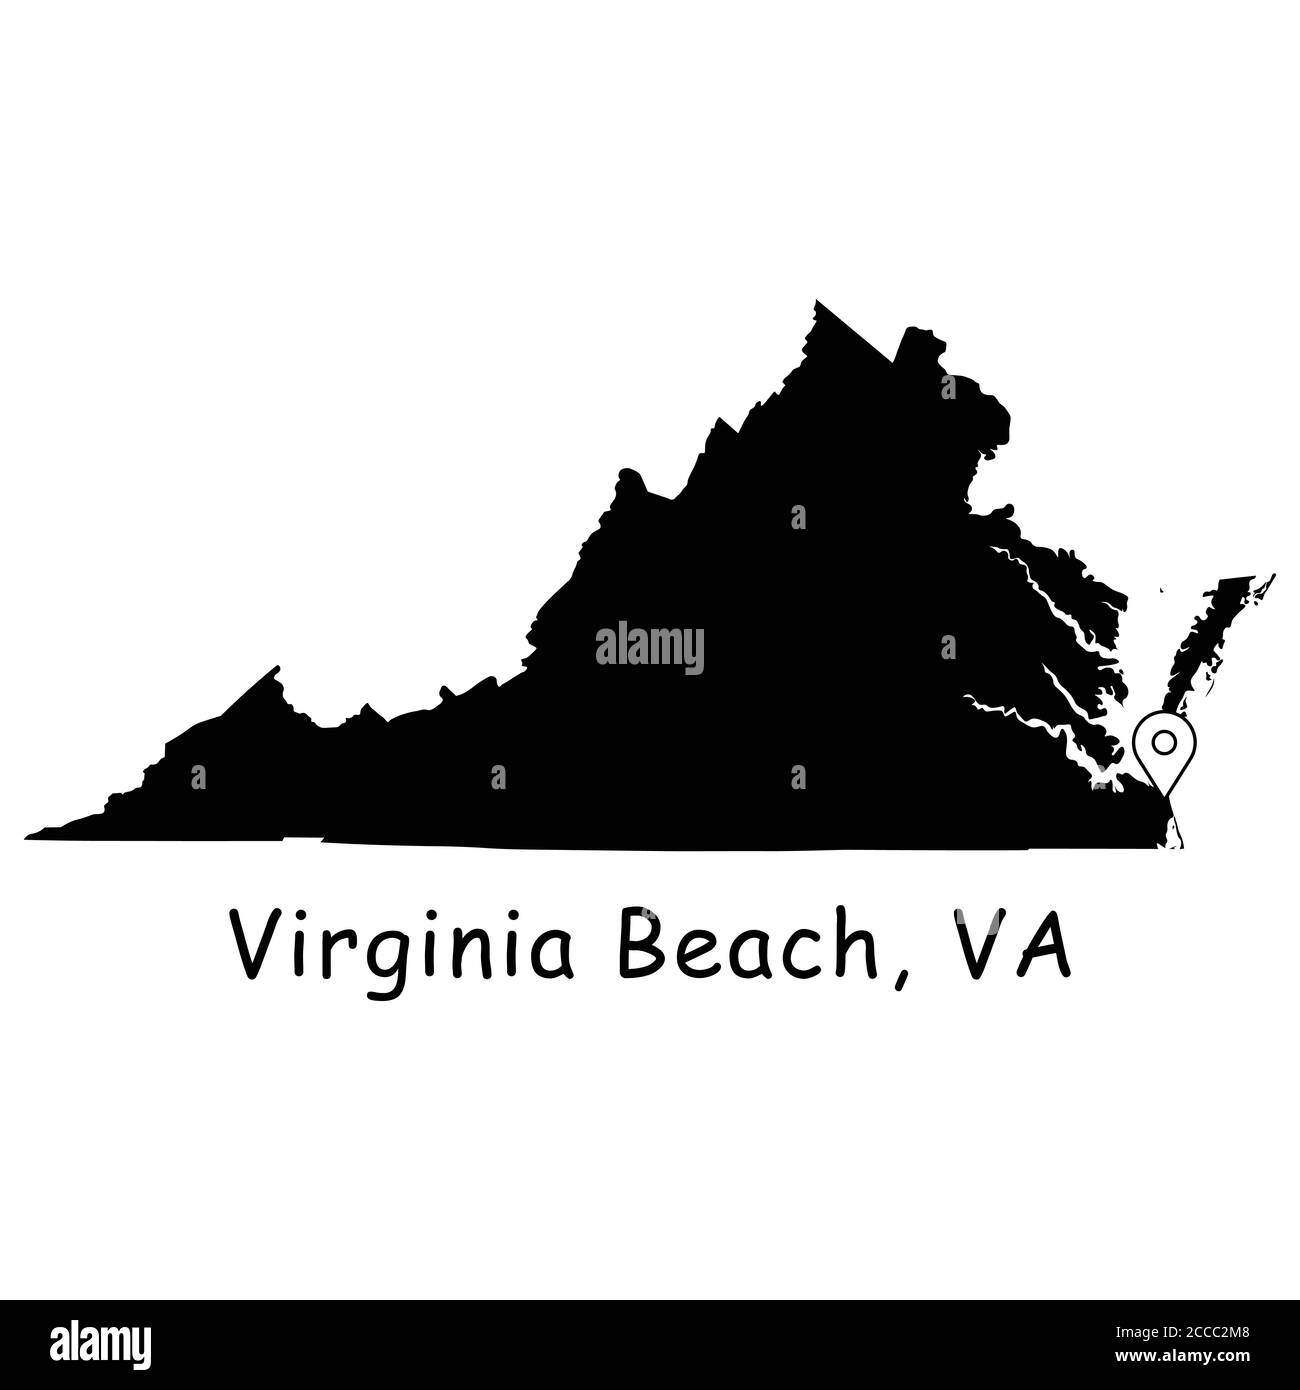 Virginia Beach sur la carte de l'État de Virginie. Carte détaillée de l'État de Virginie avec broche d'emplacement sur Virginia Beach City. Carte vectorielle de silhouette noire isolée sur la bande blanche Illustration de Vecteur